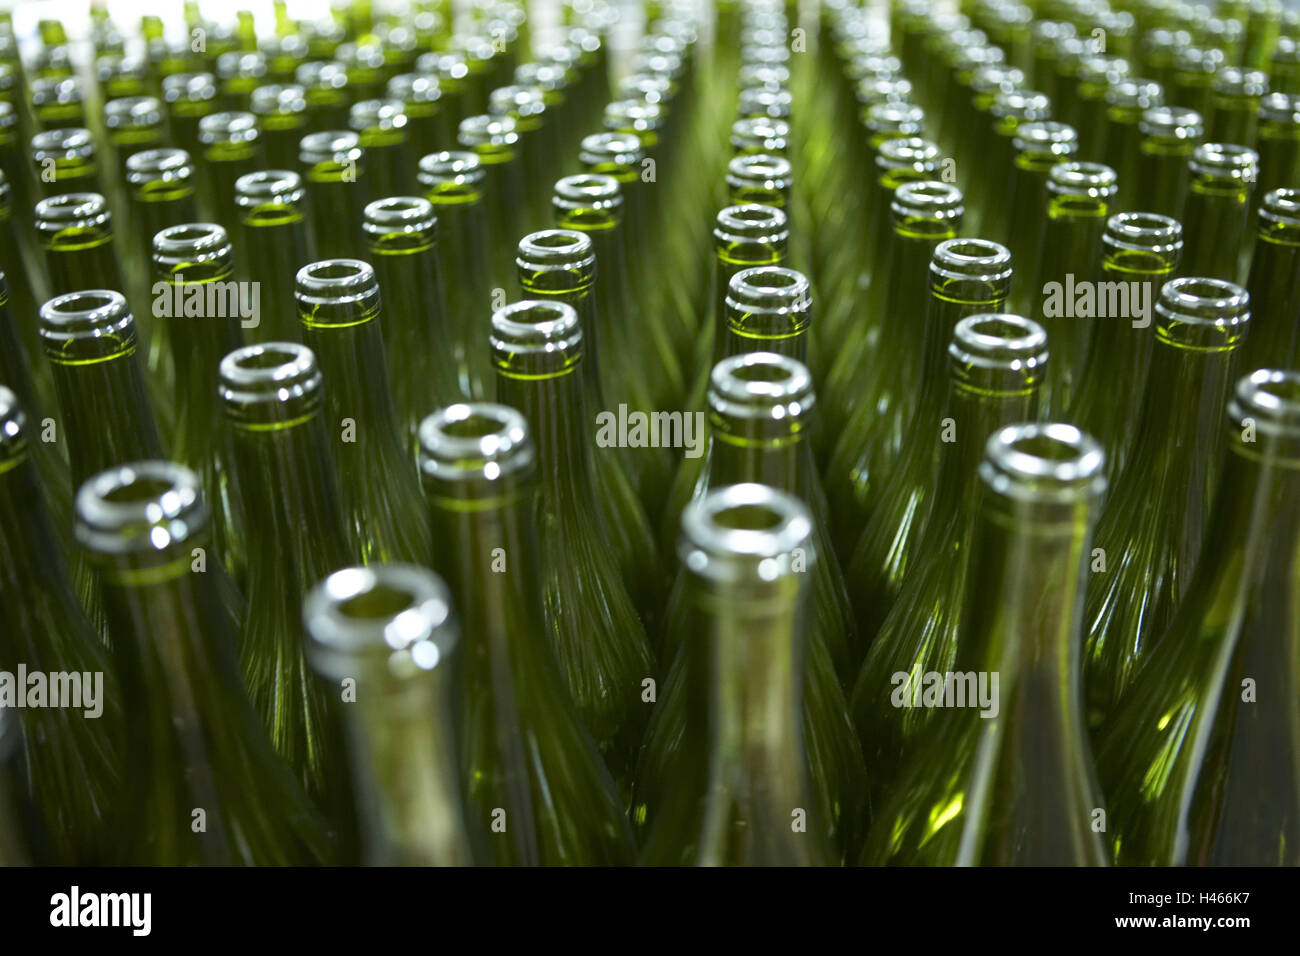 Bottiglie, dettaglio, sfocatura, bere industria, industria, economia, cantina, wine-premere house, bottiglie di vino le bottiglie di vetro, verde, serie, apertamente, riempimento, Foto Stock